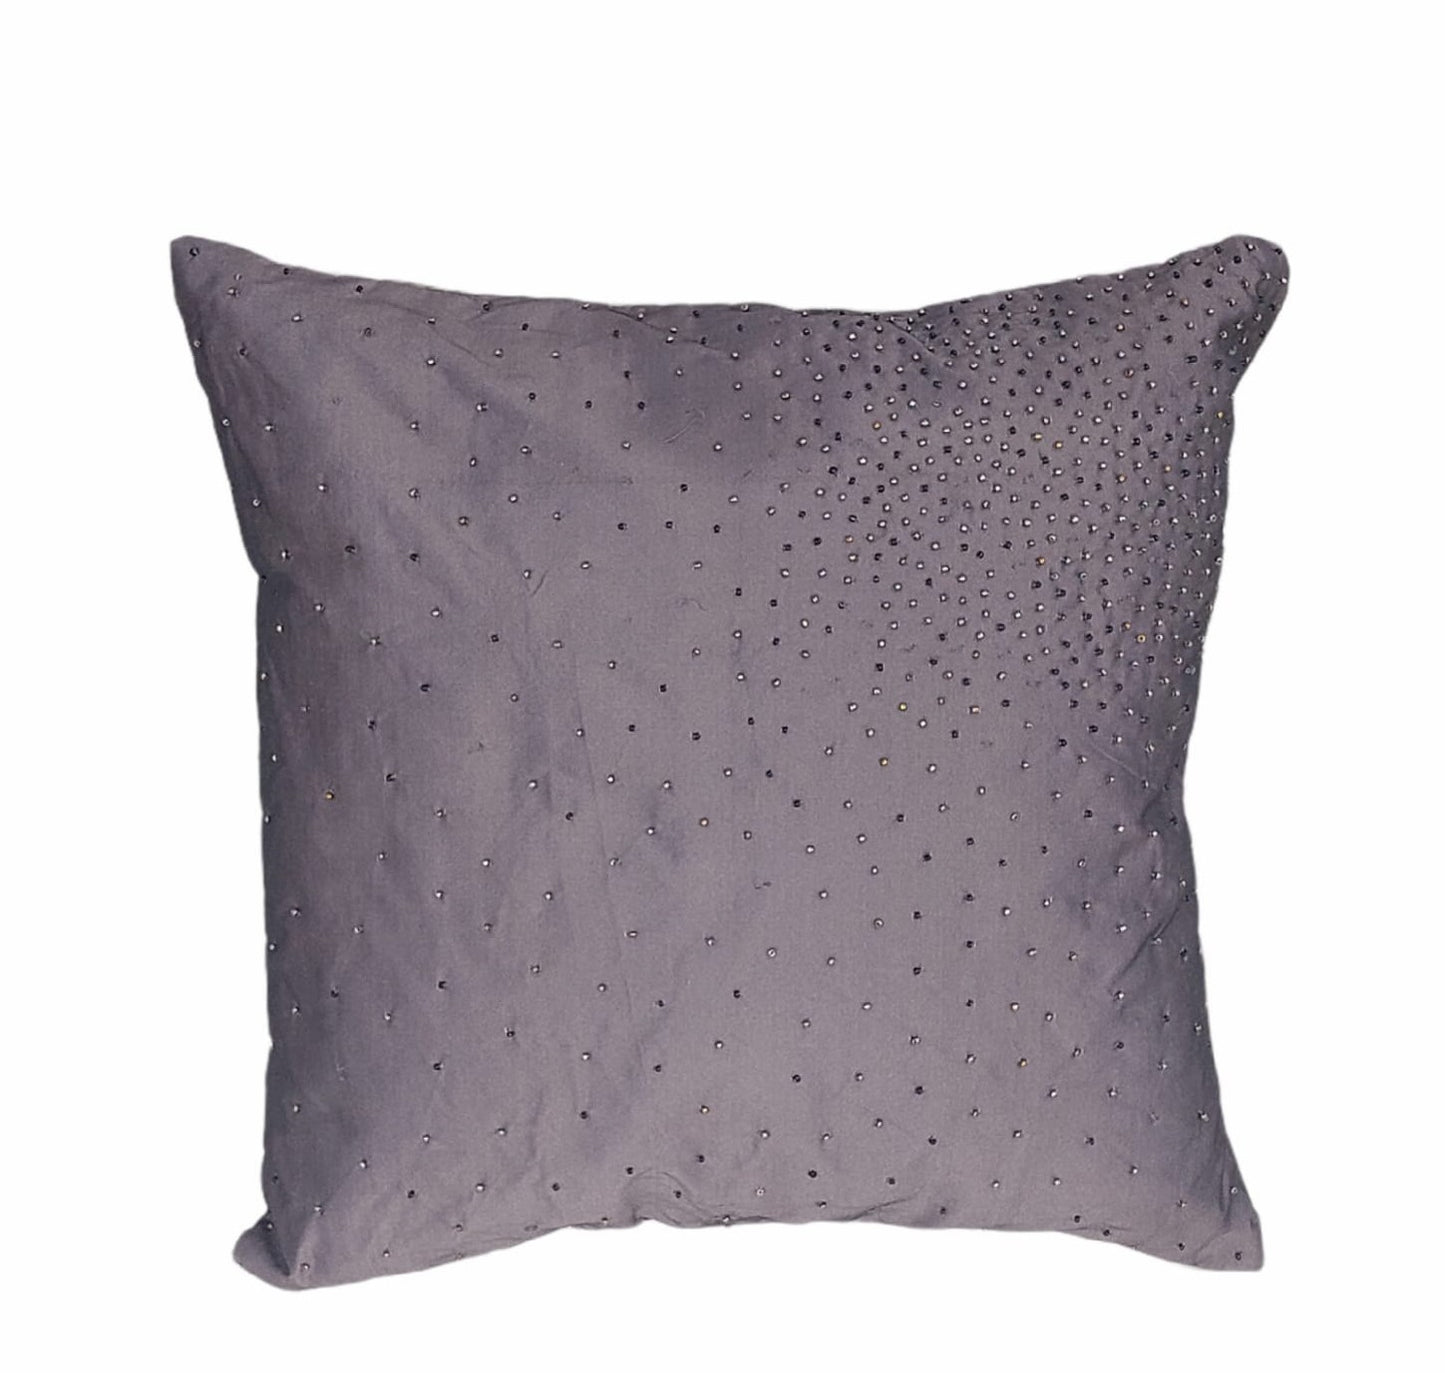 CONSTEL decorative pillow 40x40cm